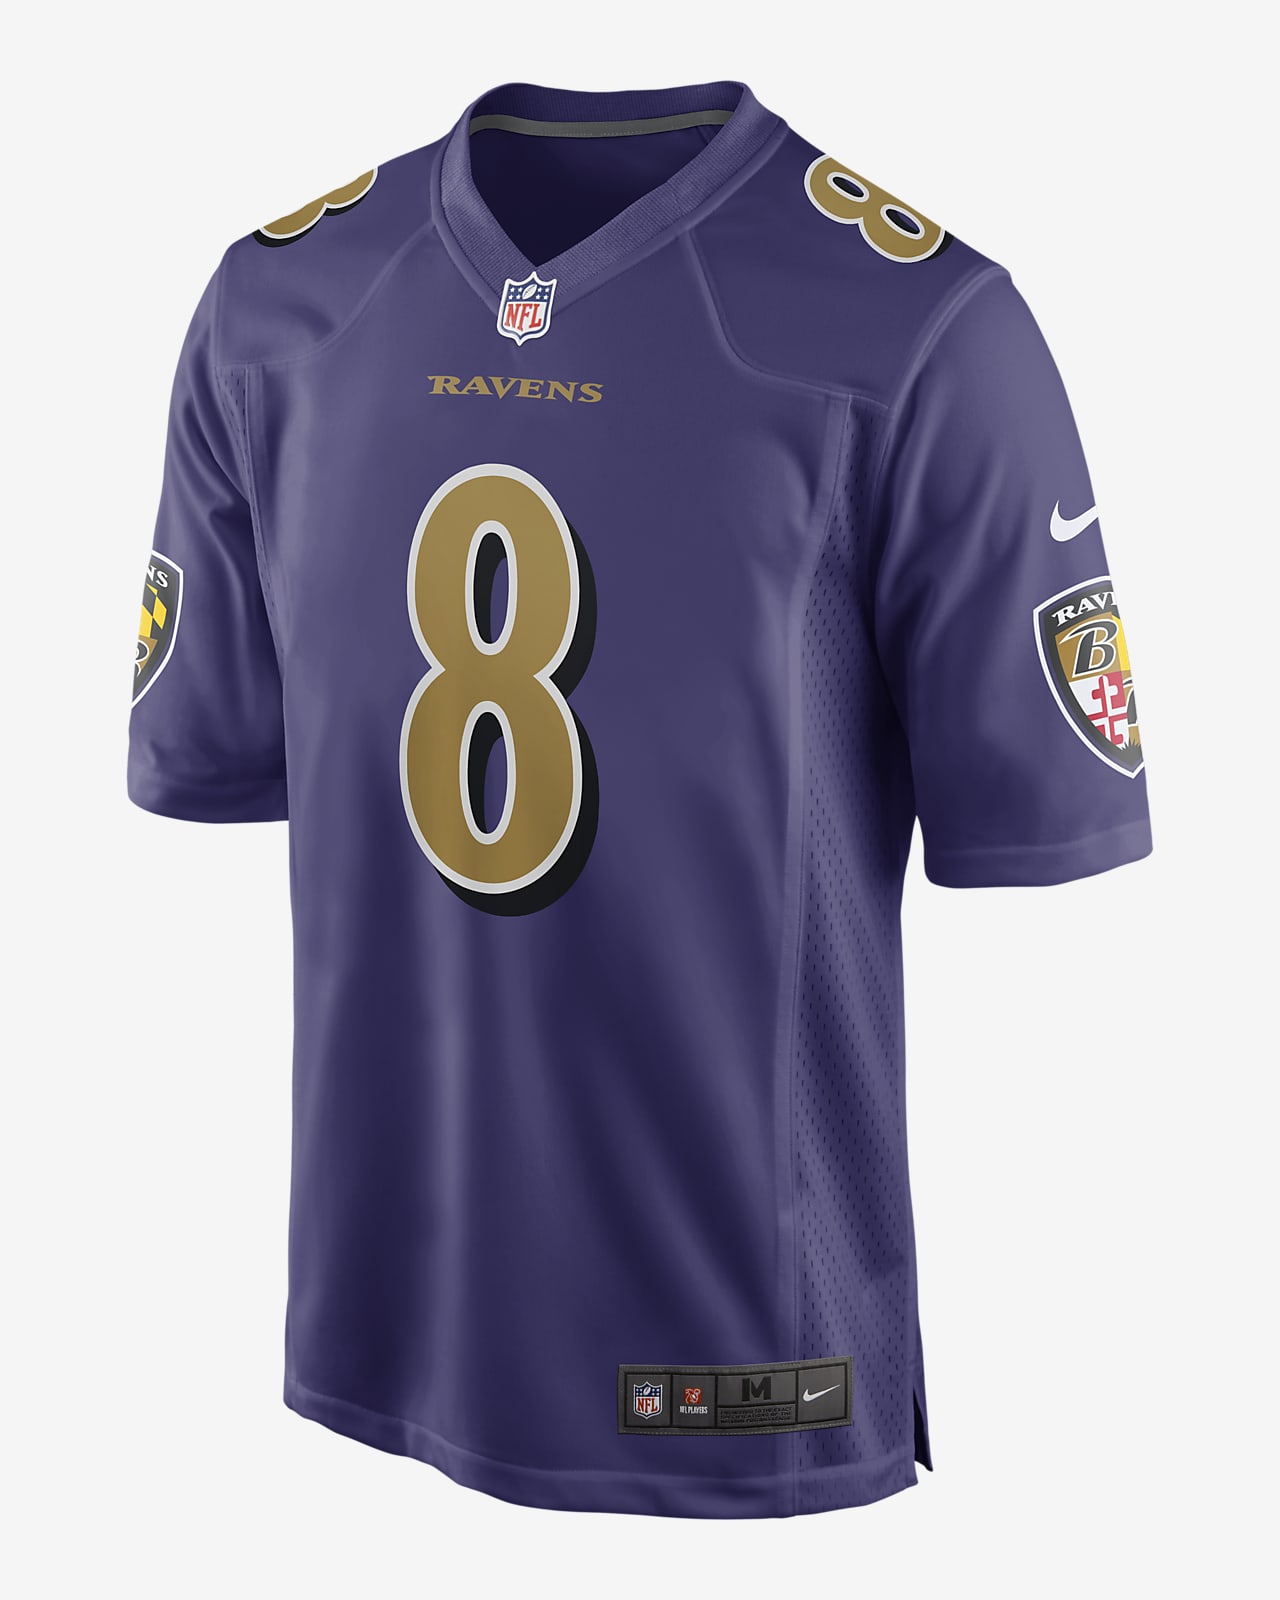 NFL Baltimore Ravens (Lamar Jackson) Men's Game Football Jersey